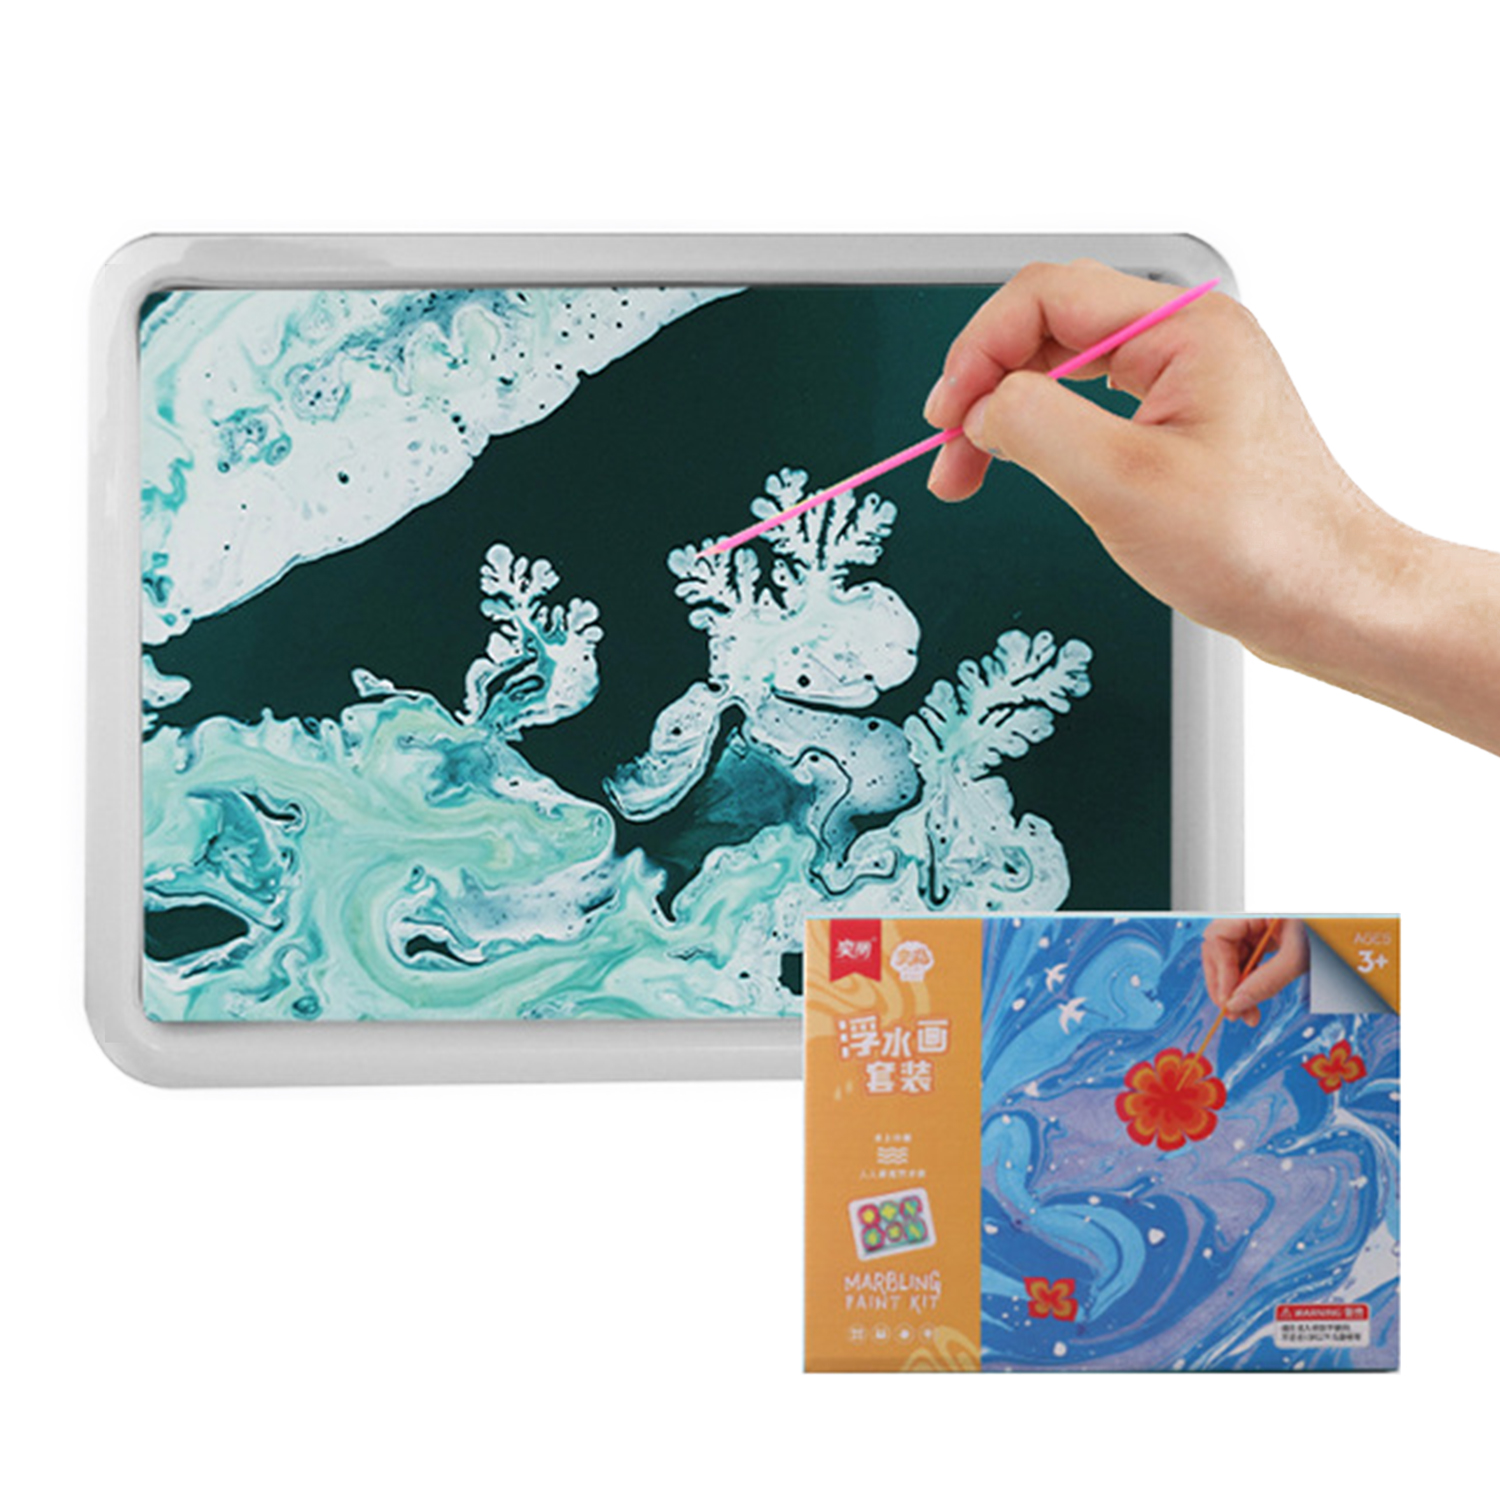 Fashion 6/12 Колорный набор для краски для детей плавающая картина мраморная краска Ebru Мраморная набор мокрой краски акварельный рисунок/DIY1